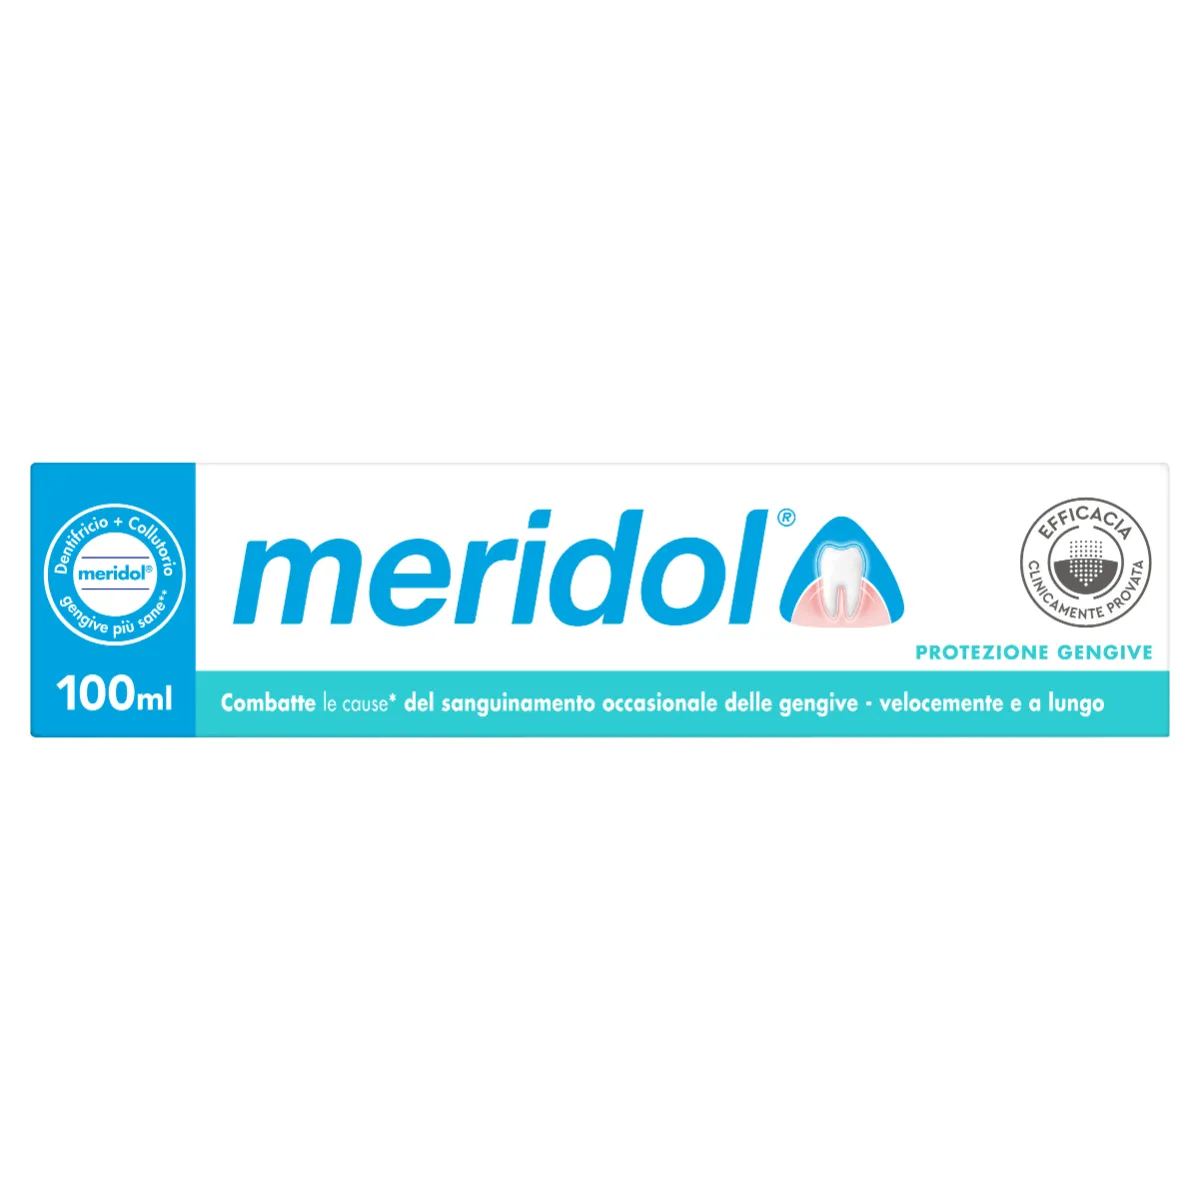 Meridol Dentifricio 100 ml Protezione Gengivale a Lunga Durata